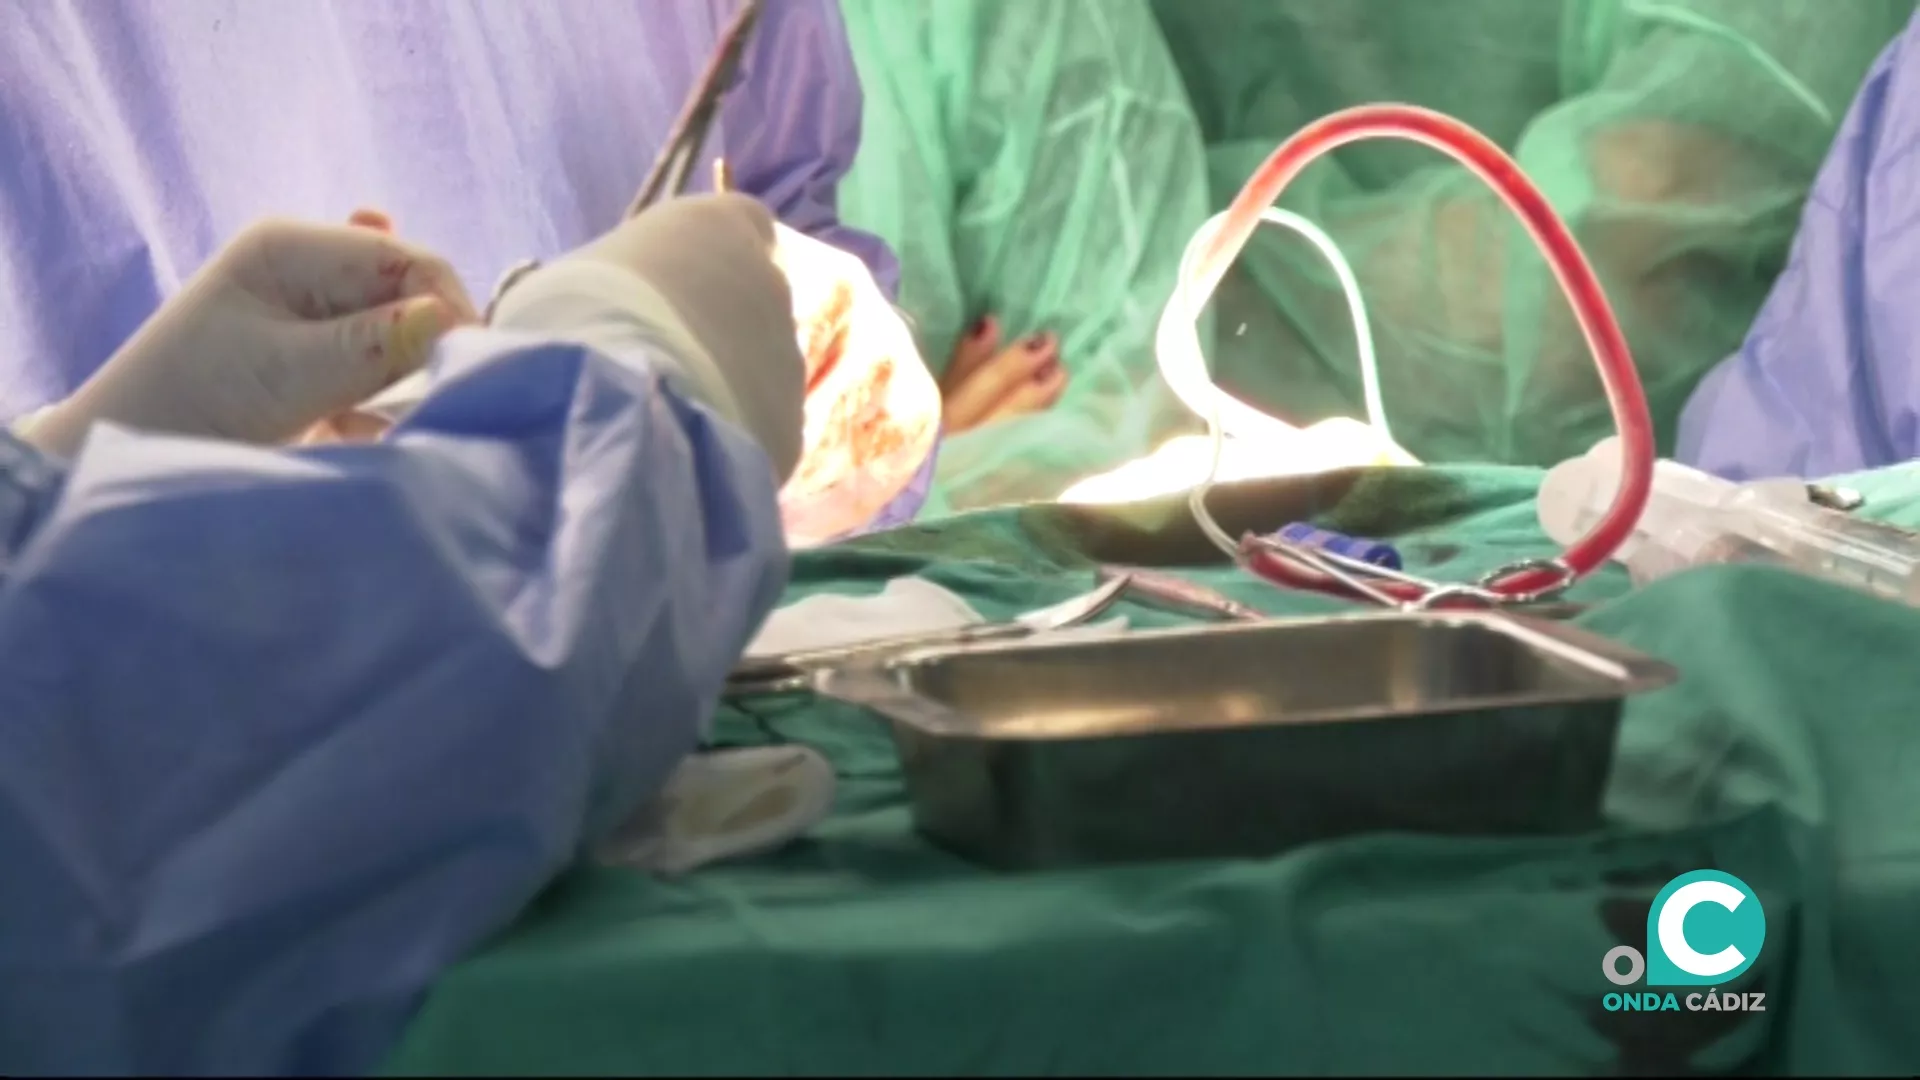 En lo que va de año, hasta el mes de abril, se han producido 36 trasplantes renales en el Hospital Puerta del Mar